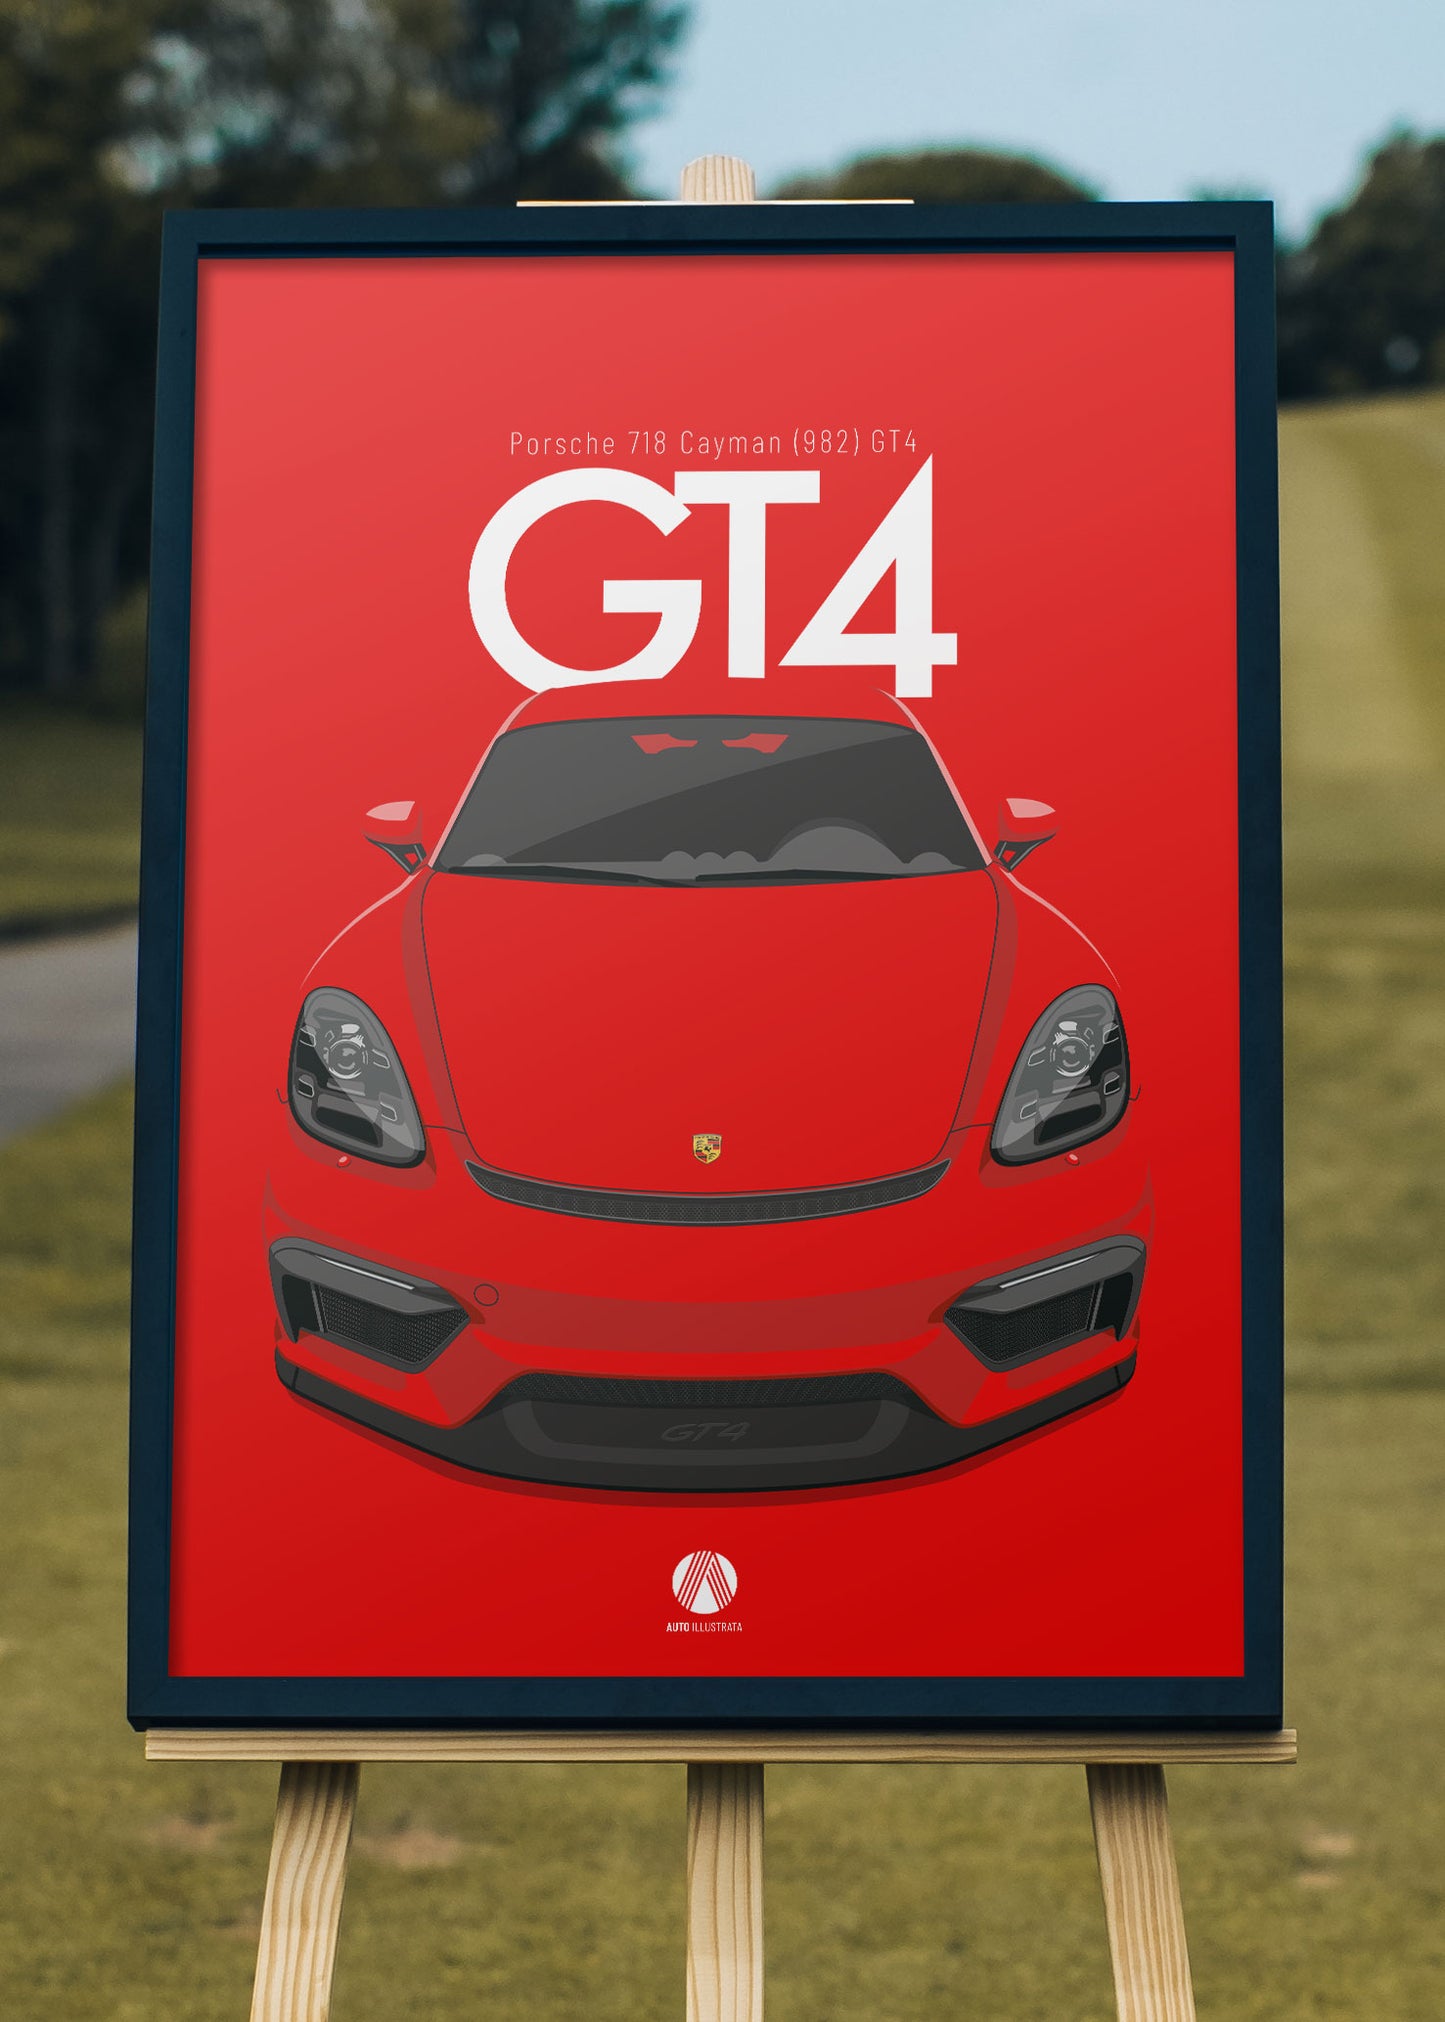 2020 Porsche 718 Cayman (982) GT4 Guards Red - poster print